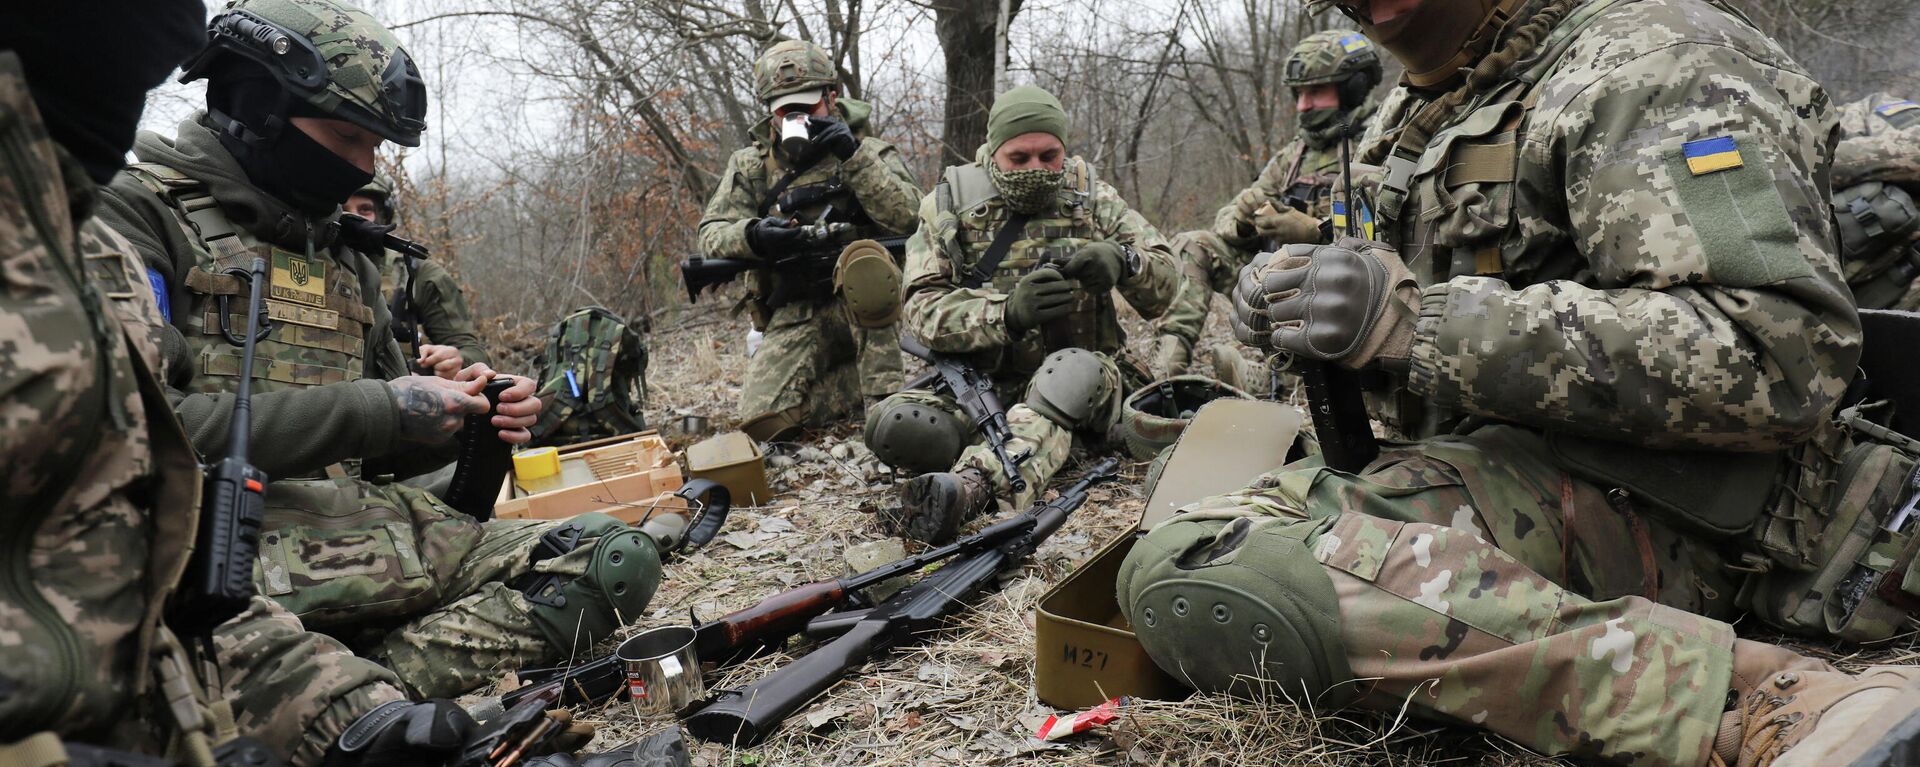 أعضاء من قوات الدفاع الإقليمية الأوكرانية يستريحون خلال التدريبات التكتيكية، بالقرب من لفوف، أوكرانيا، 16 مارس 2022. - سبوتنيك عربي, 1920, 20.03.2022